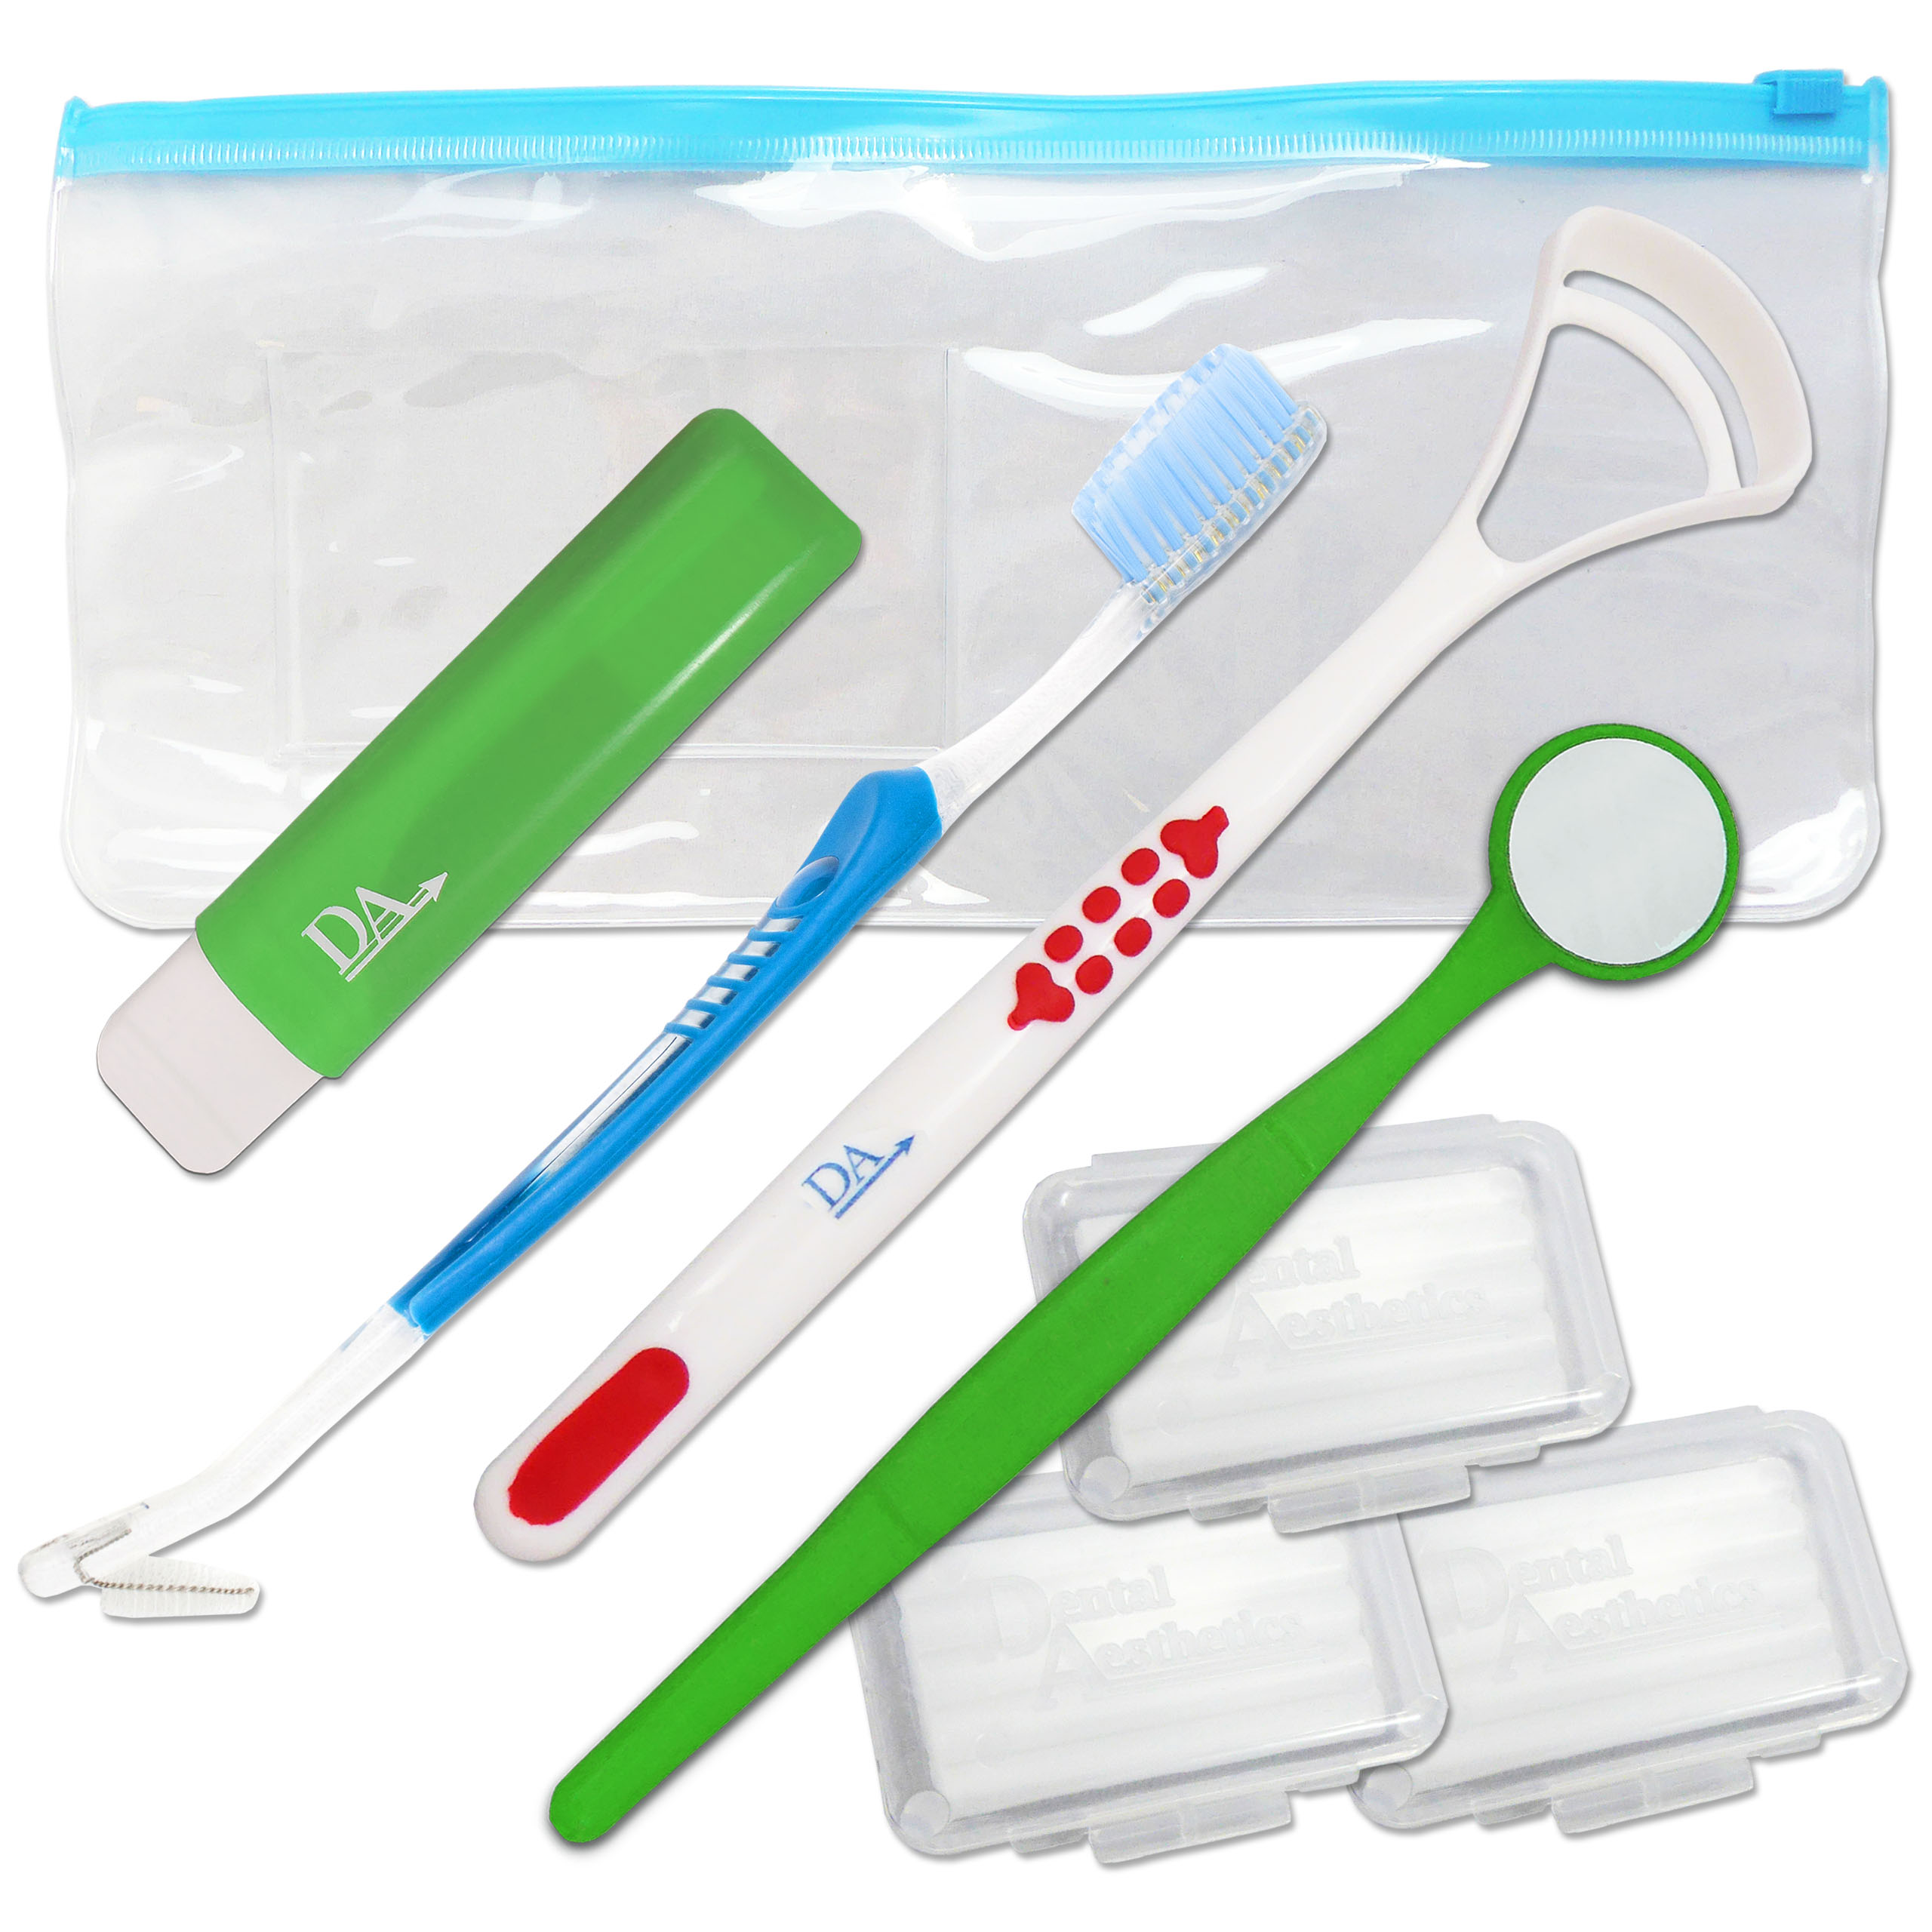 Braces Starter Kit ~ Orthodontic Toothbrushes, Wax & More - Dental ...